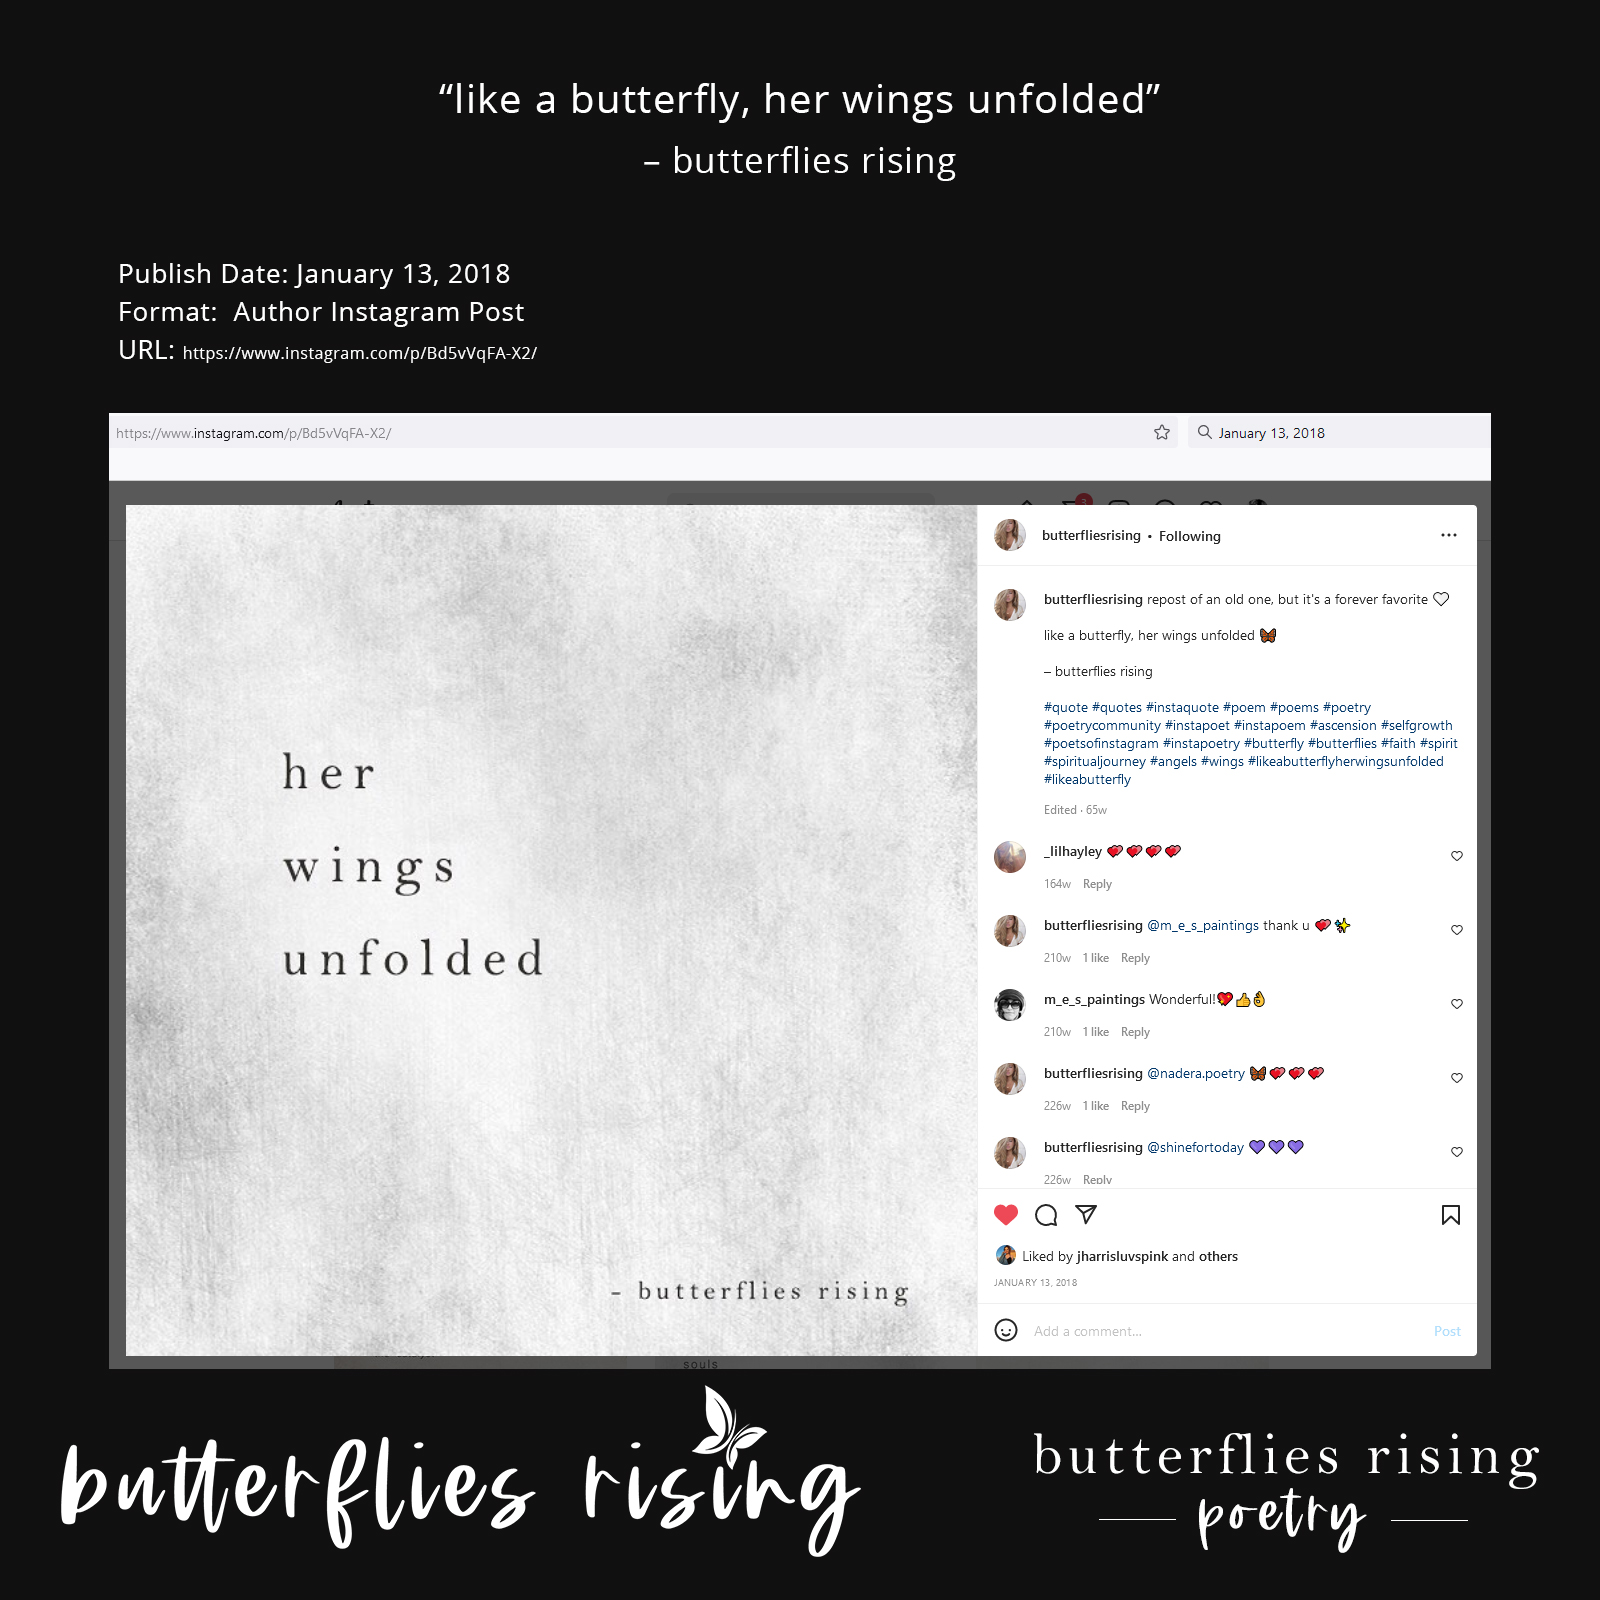 like a butterfly, her wings unfolded - butterflies rising